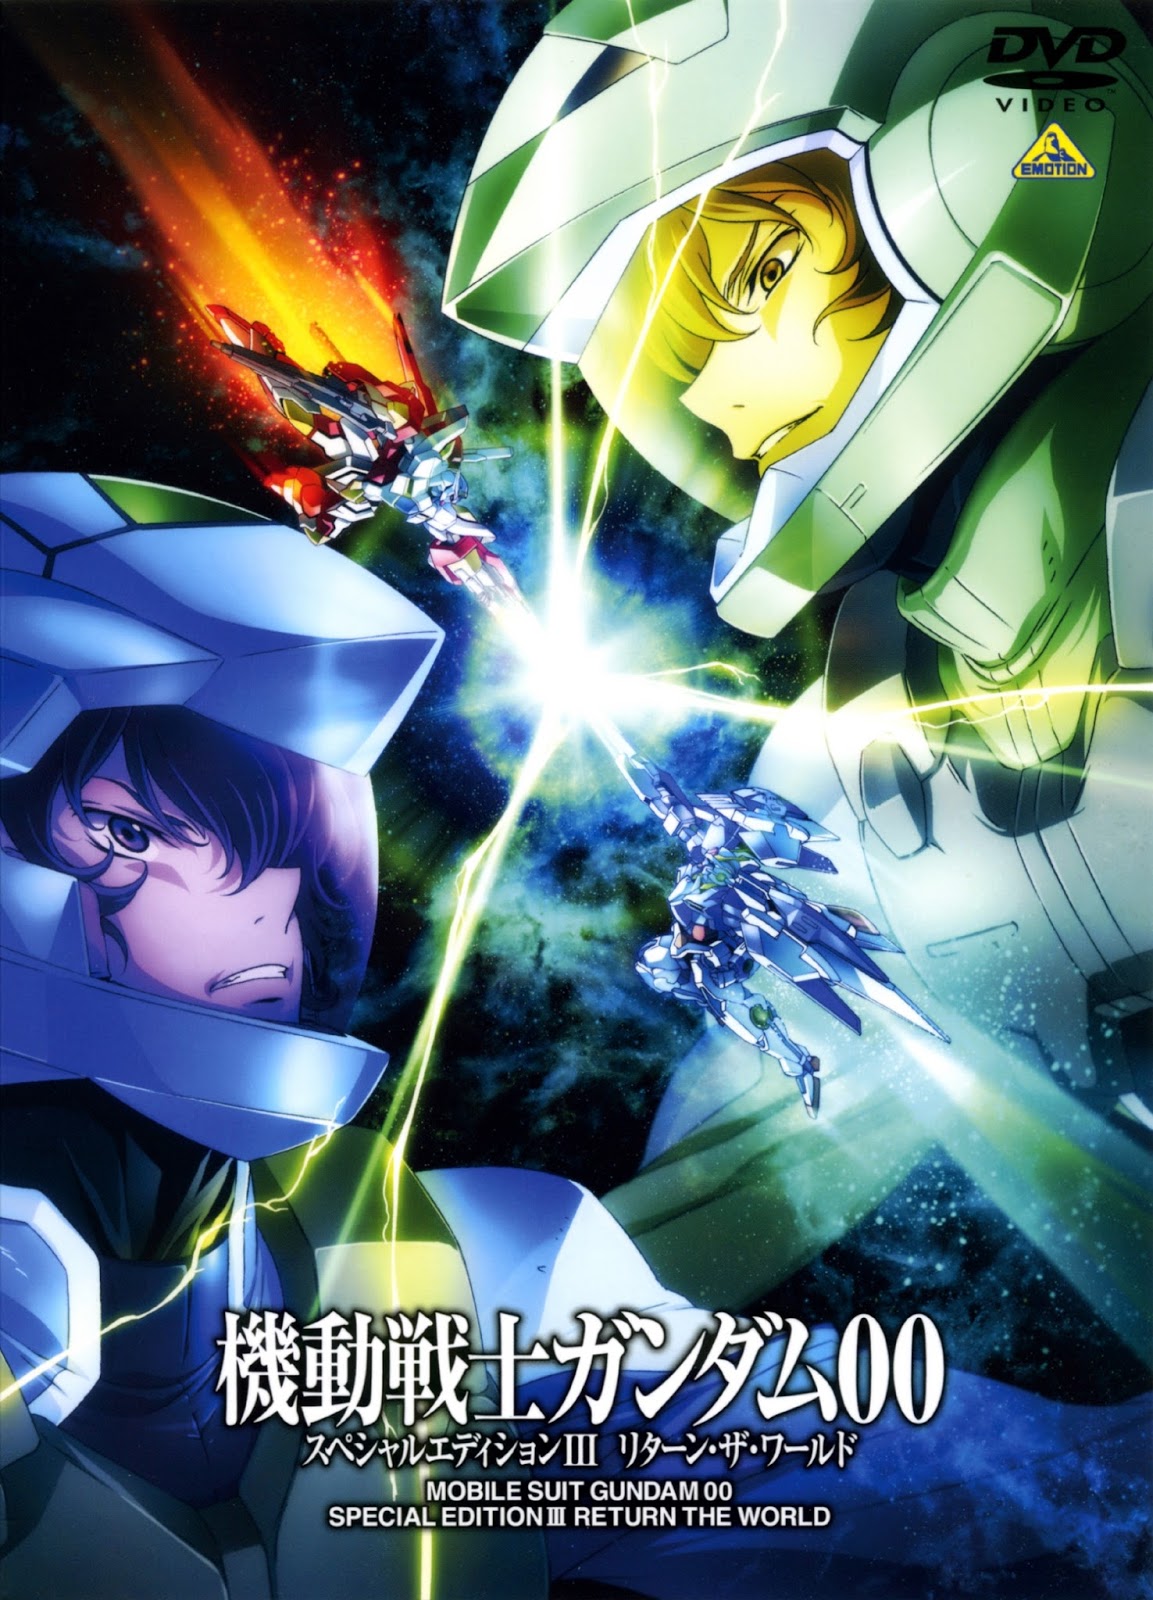 Download Mobile Suit Gundam 00 Season 1 Sub Indo 480p